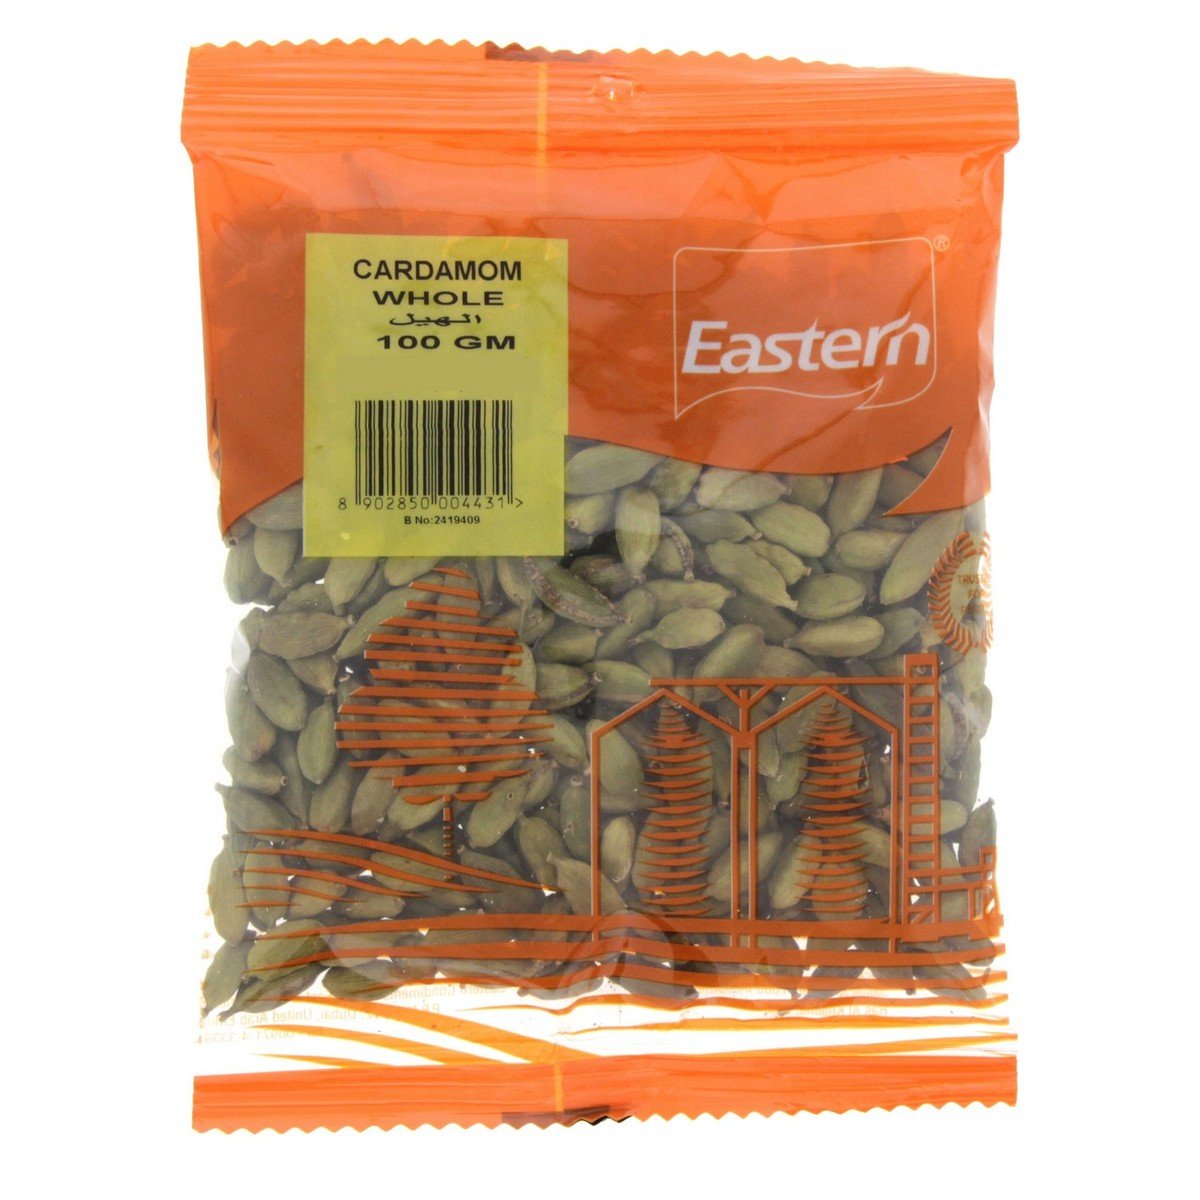 Eastern Cardamom Whole 100 g